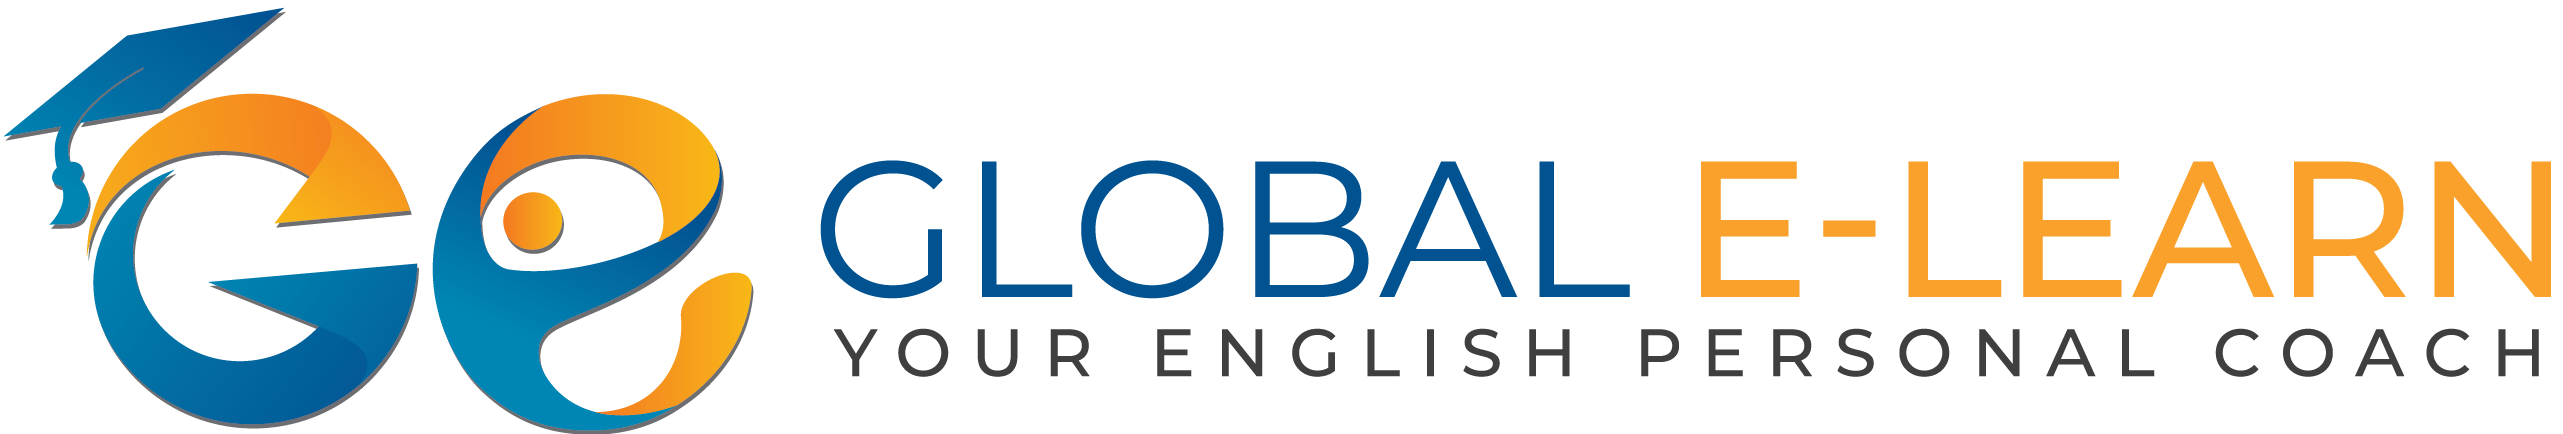 GLOBAL E-LEARN